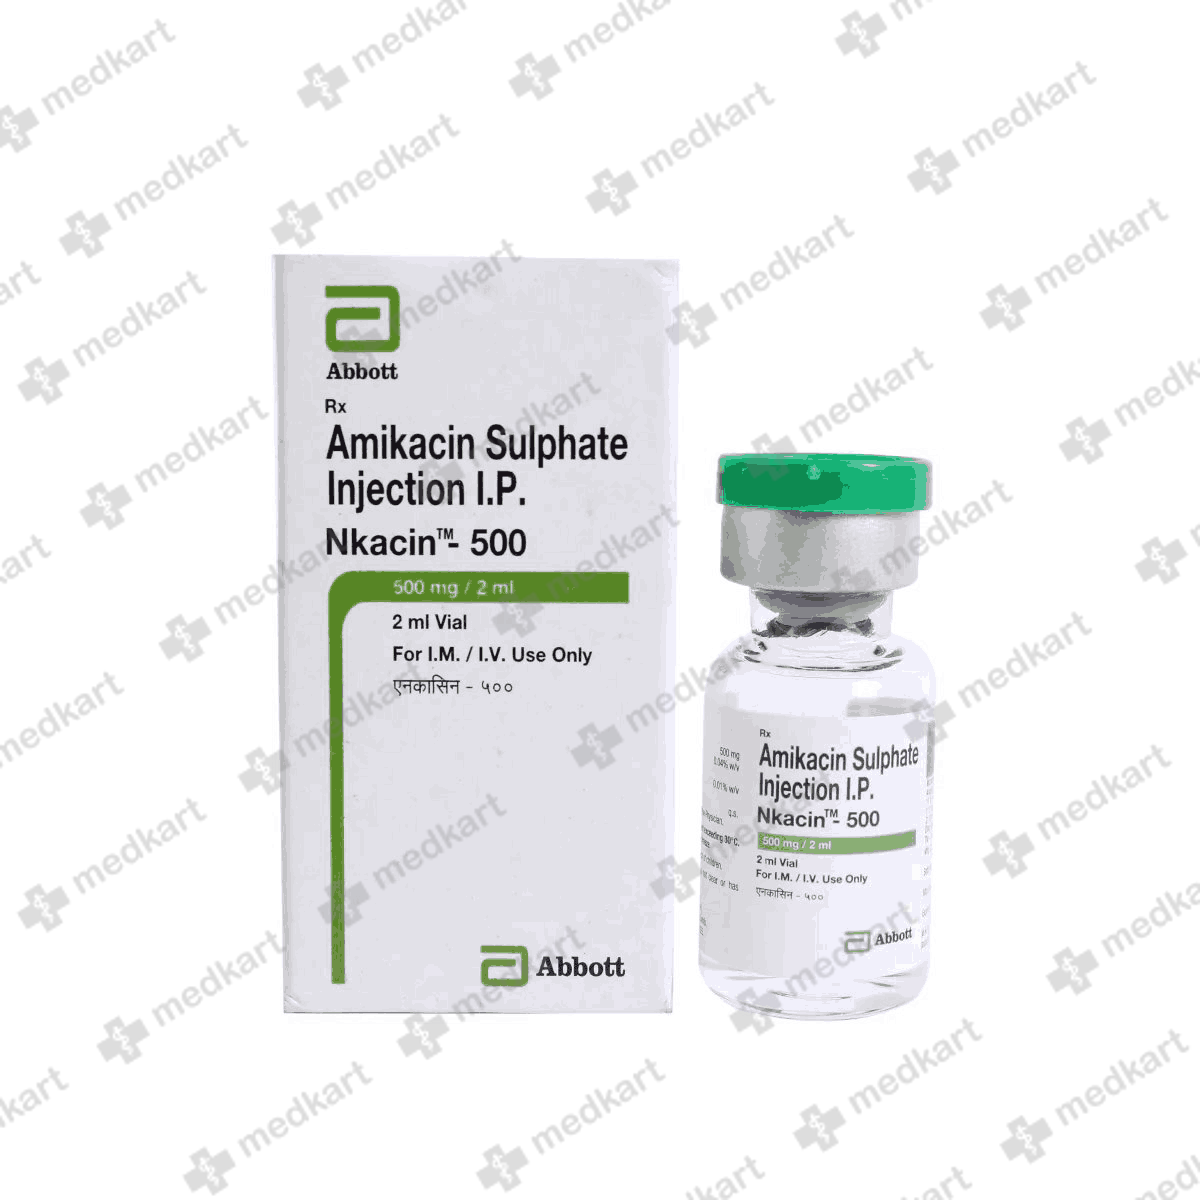 nkacin-500mg-injection-2-ml